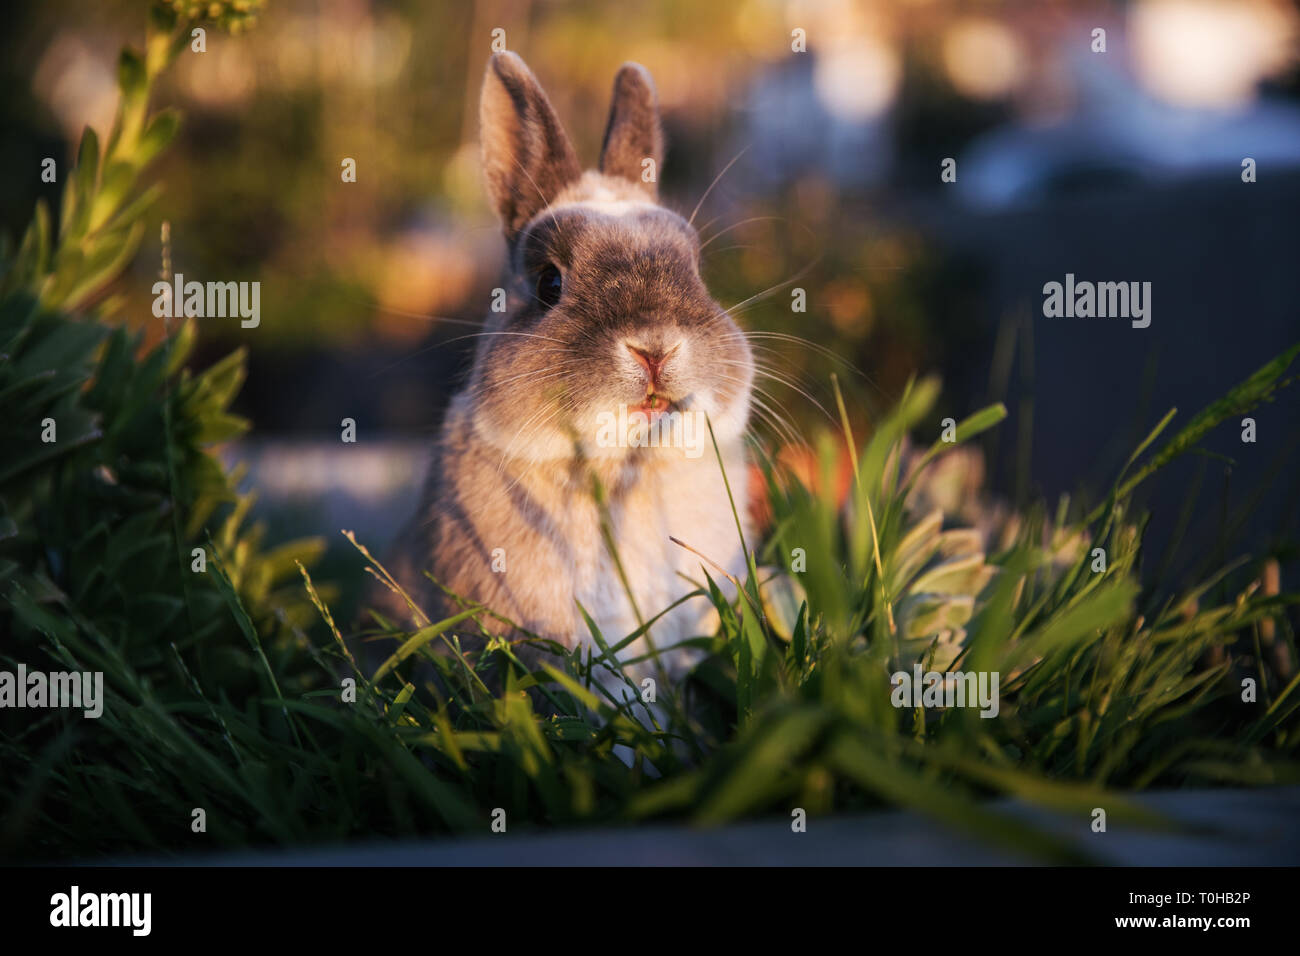 Un conejo enano mirar por encima de la hierba y mirando curiosamente hacia la cámara con la boca ligeramente abierta. Foto de stock